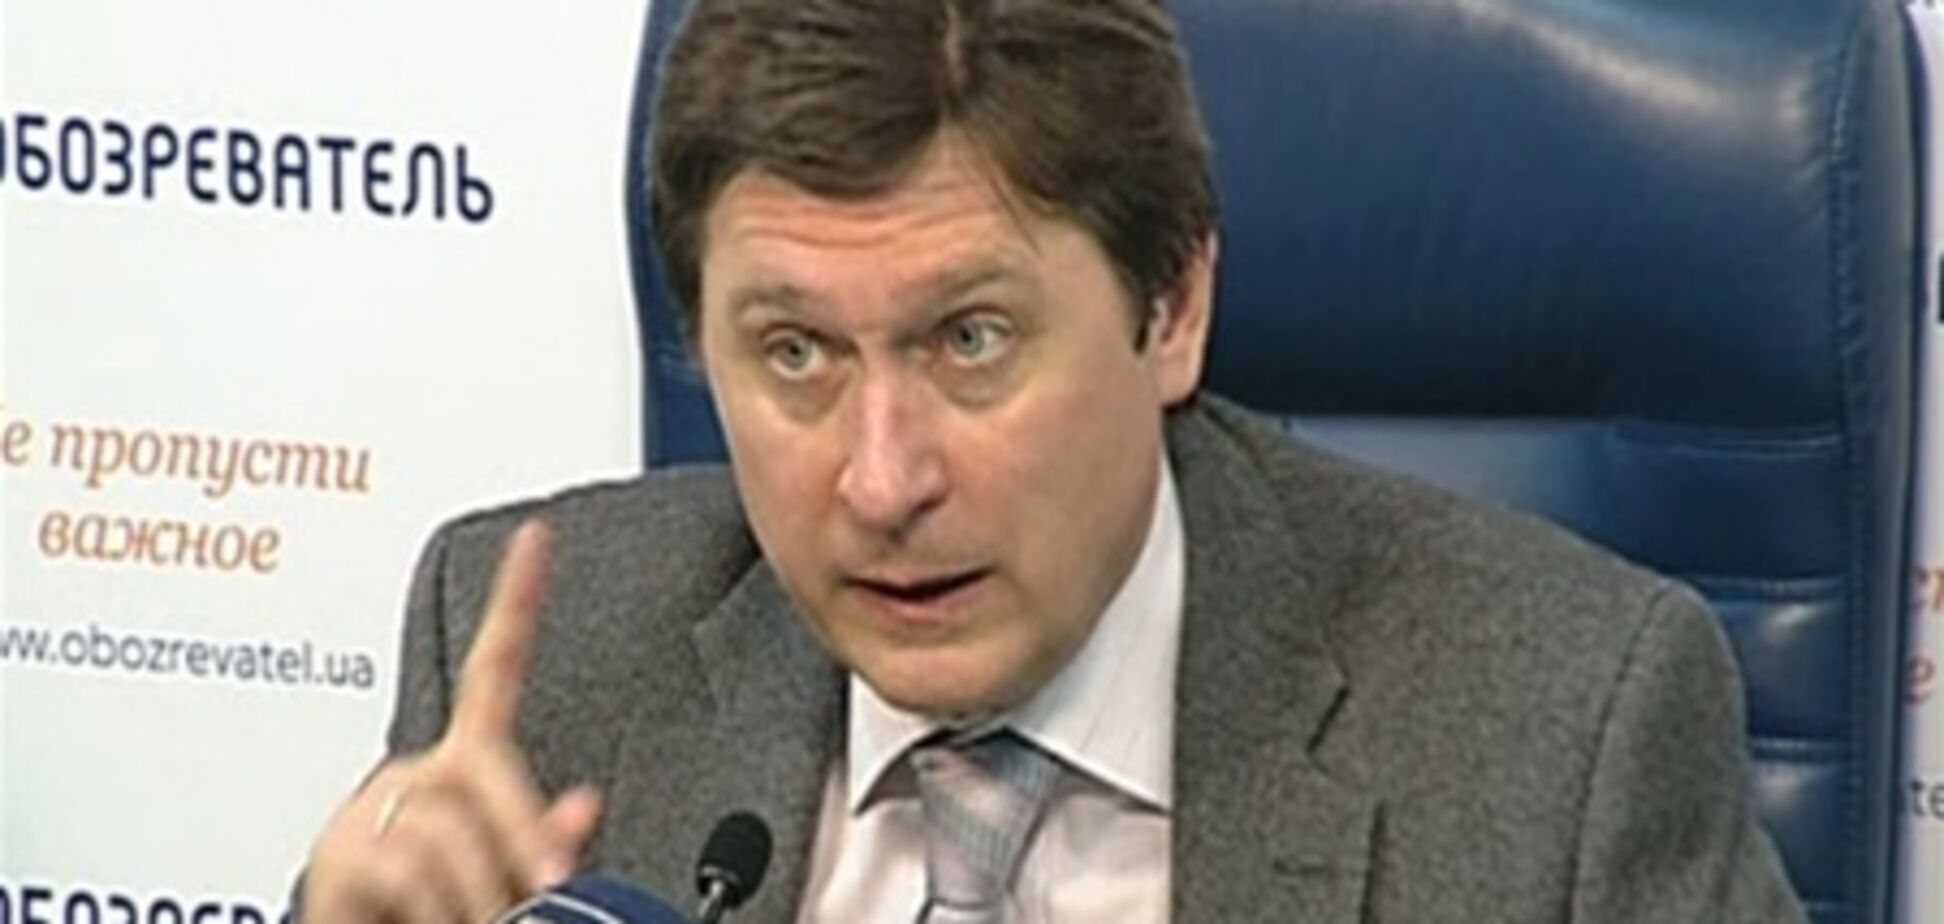 Яценюк, выдвигая Тимошенко в Президенты, 'убивает двух зайцев' - эксперт